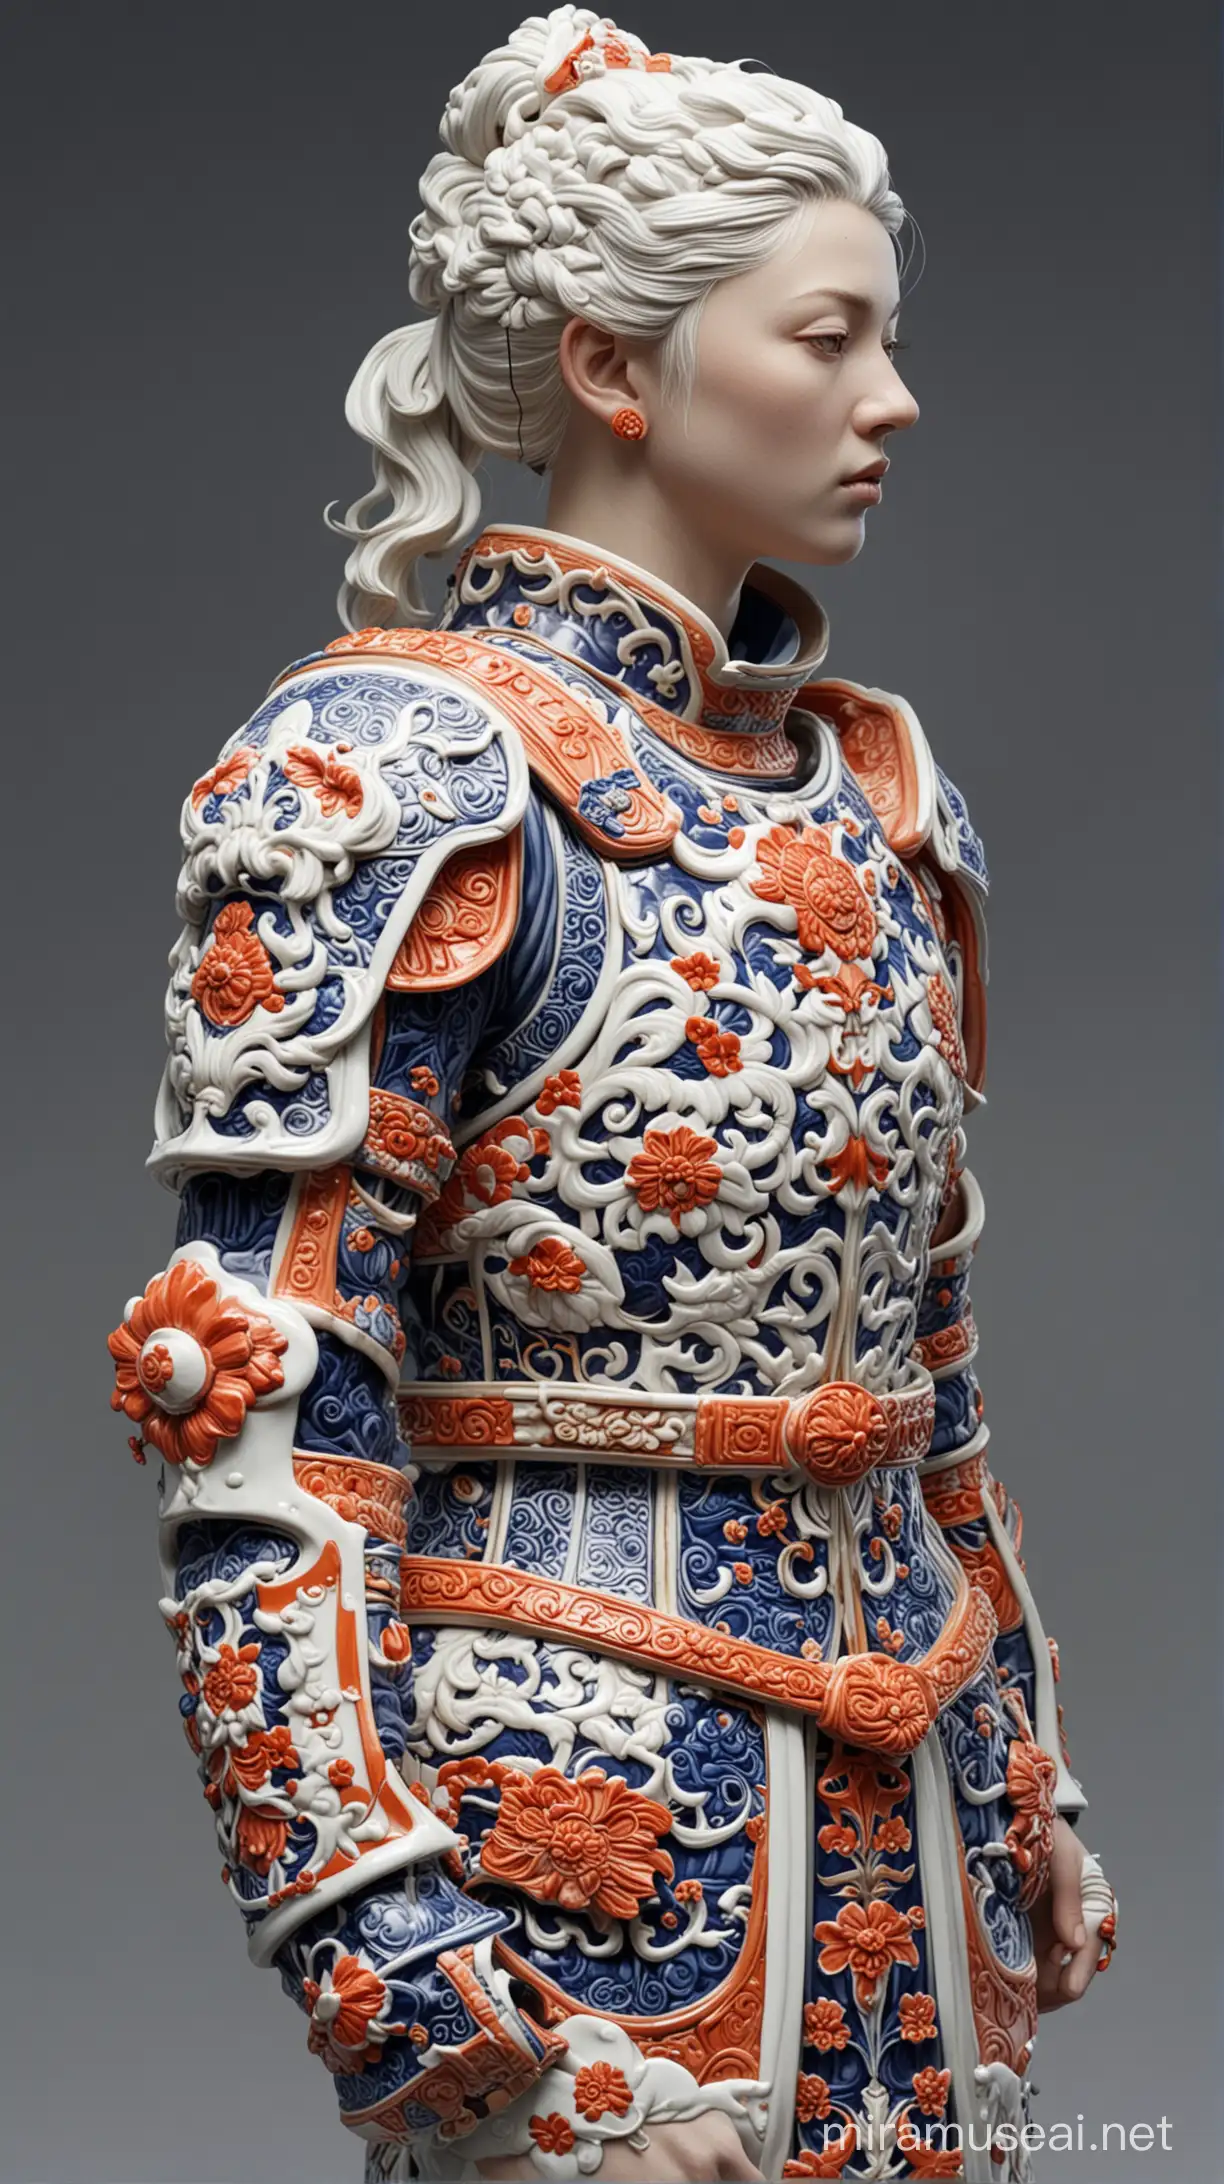 uzi sculpture, porcelain armour, Imari ware style, hyper realistic, 3d